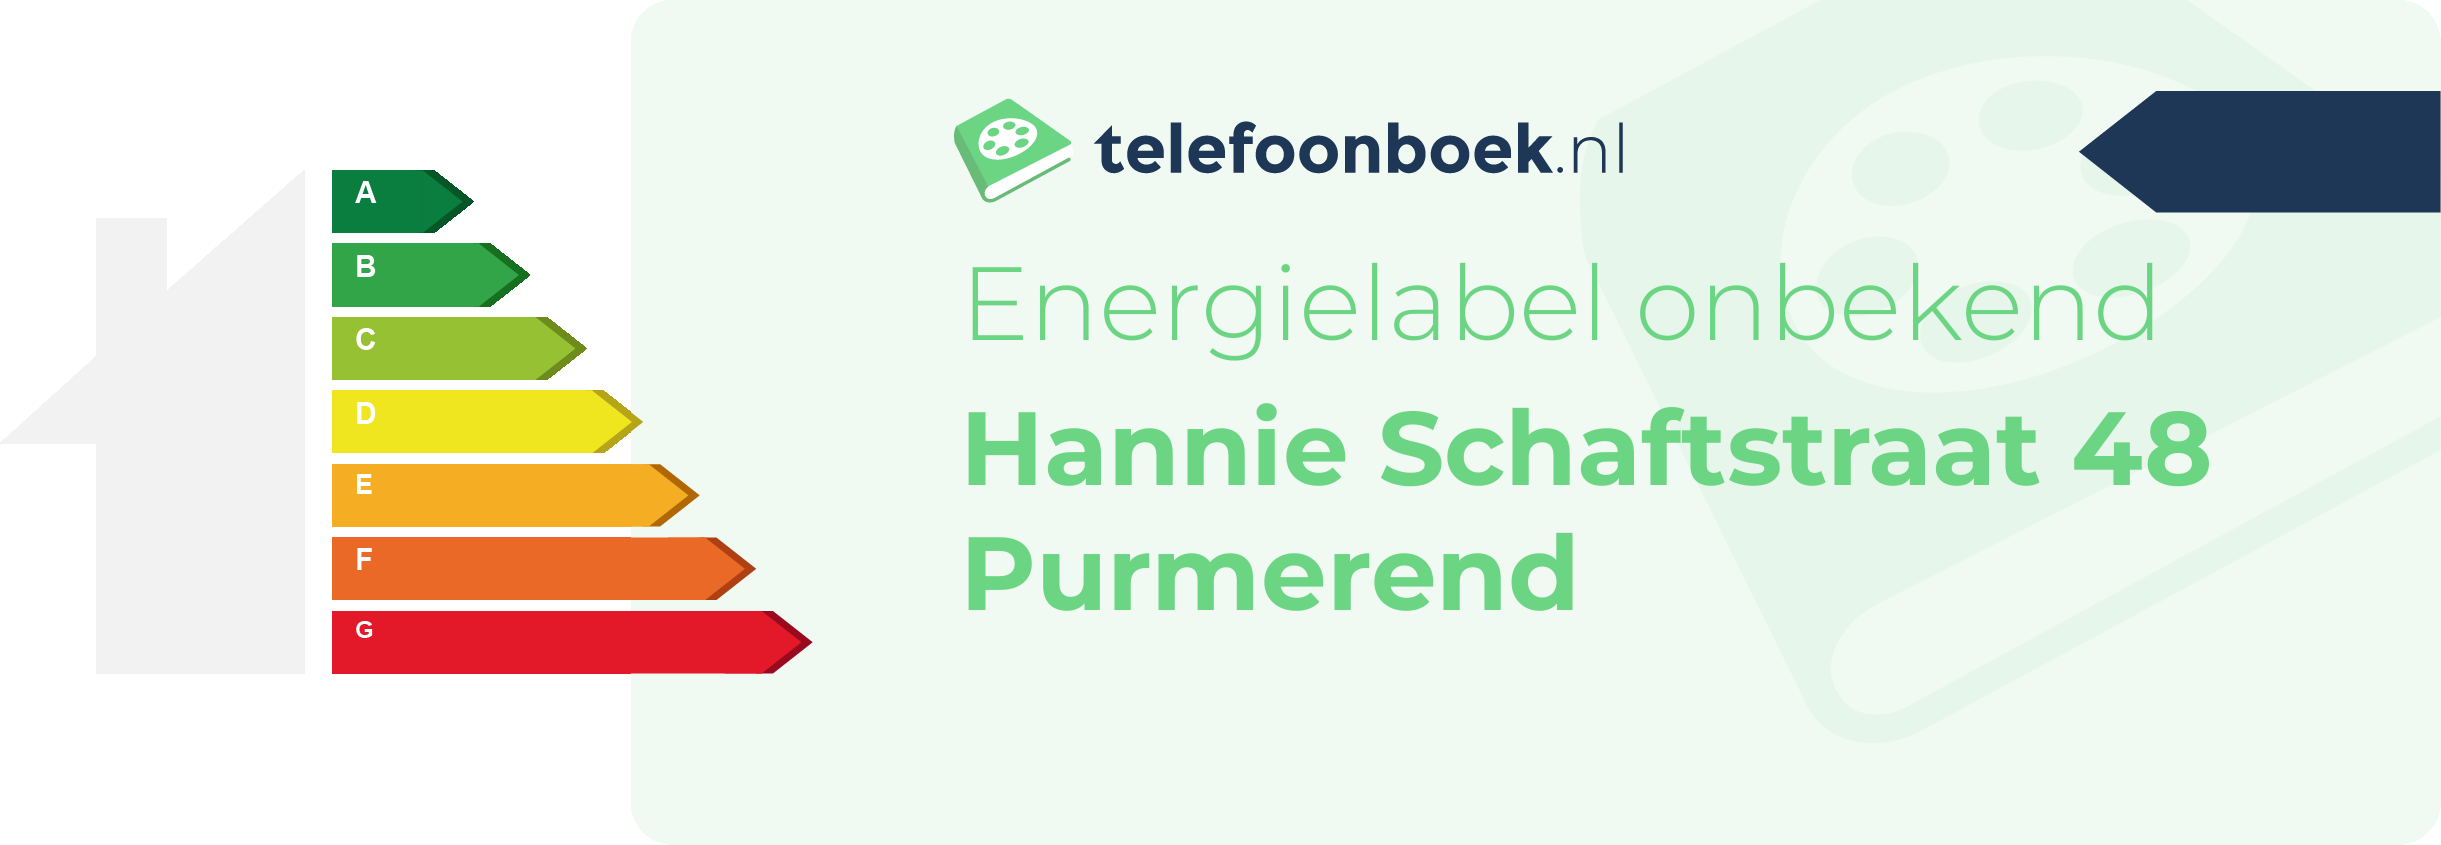 Energielabel Hannie Schaftstraat 48 Purmerend